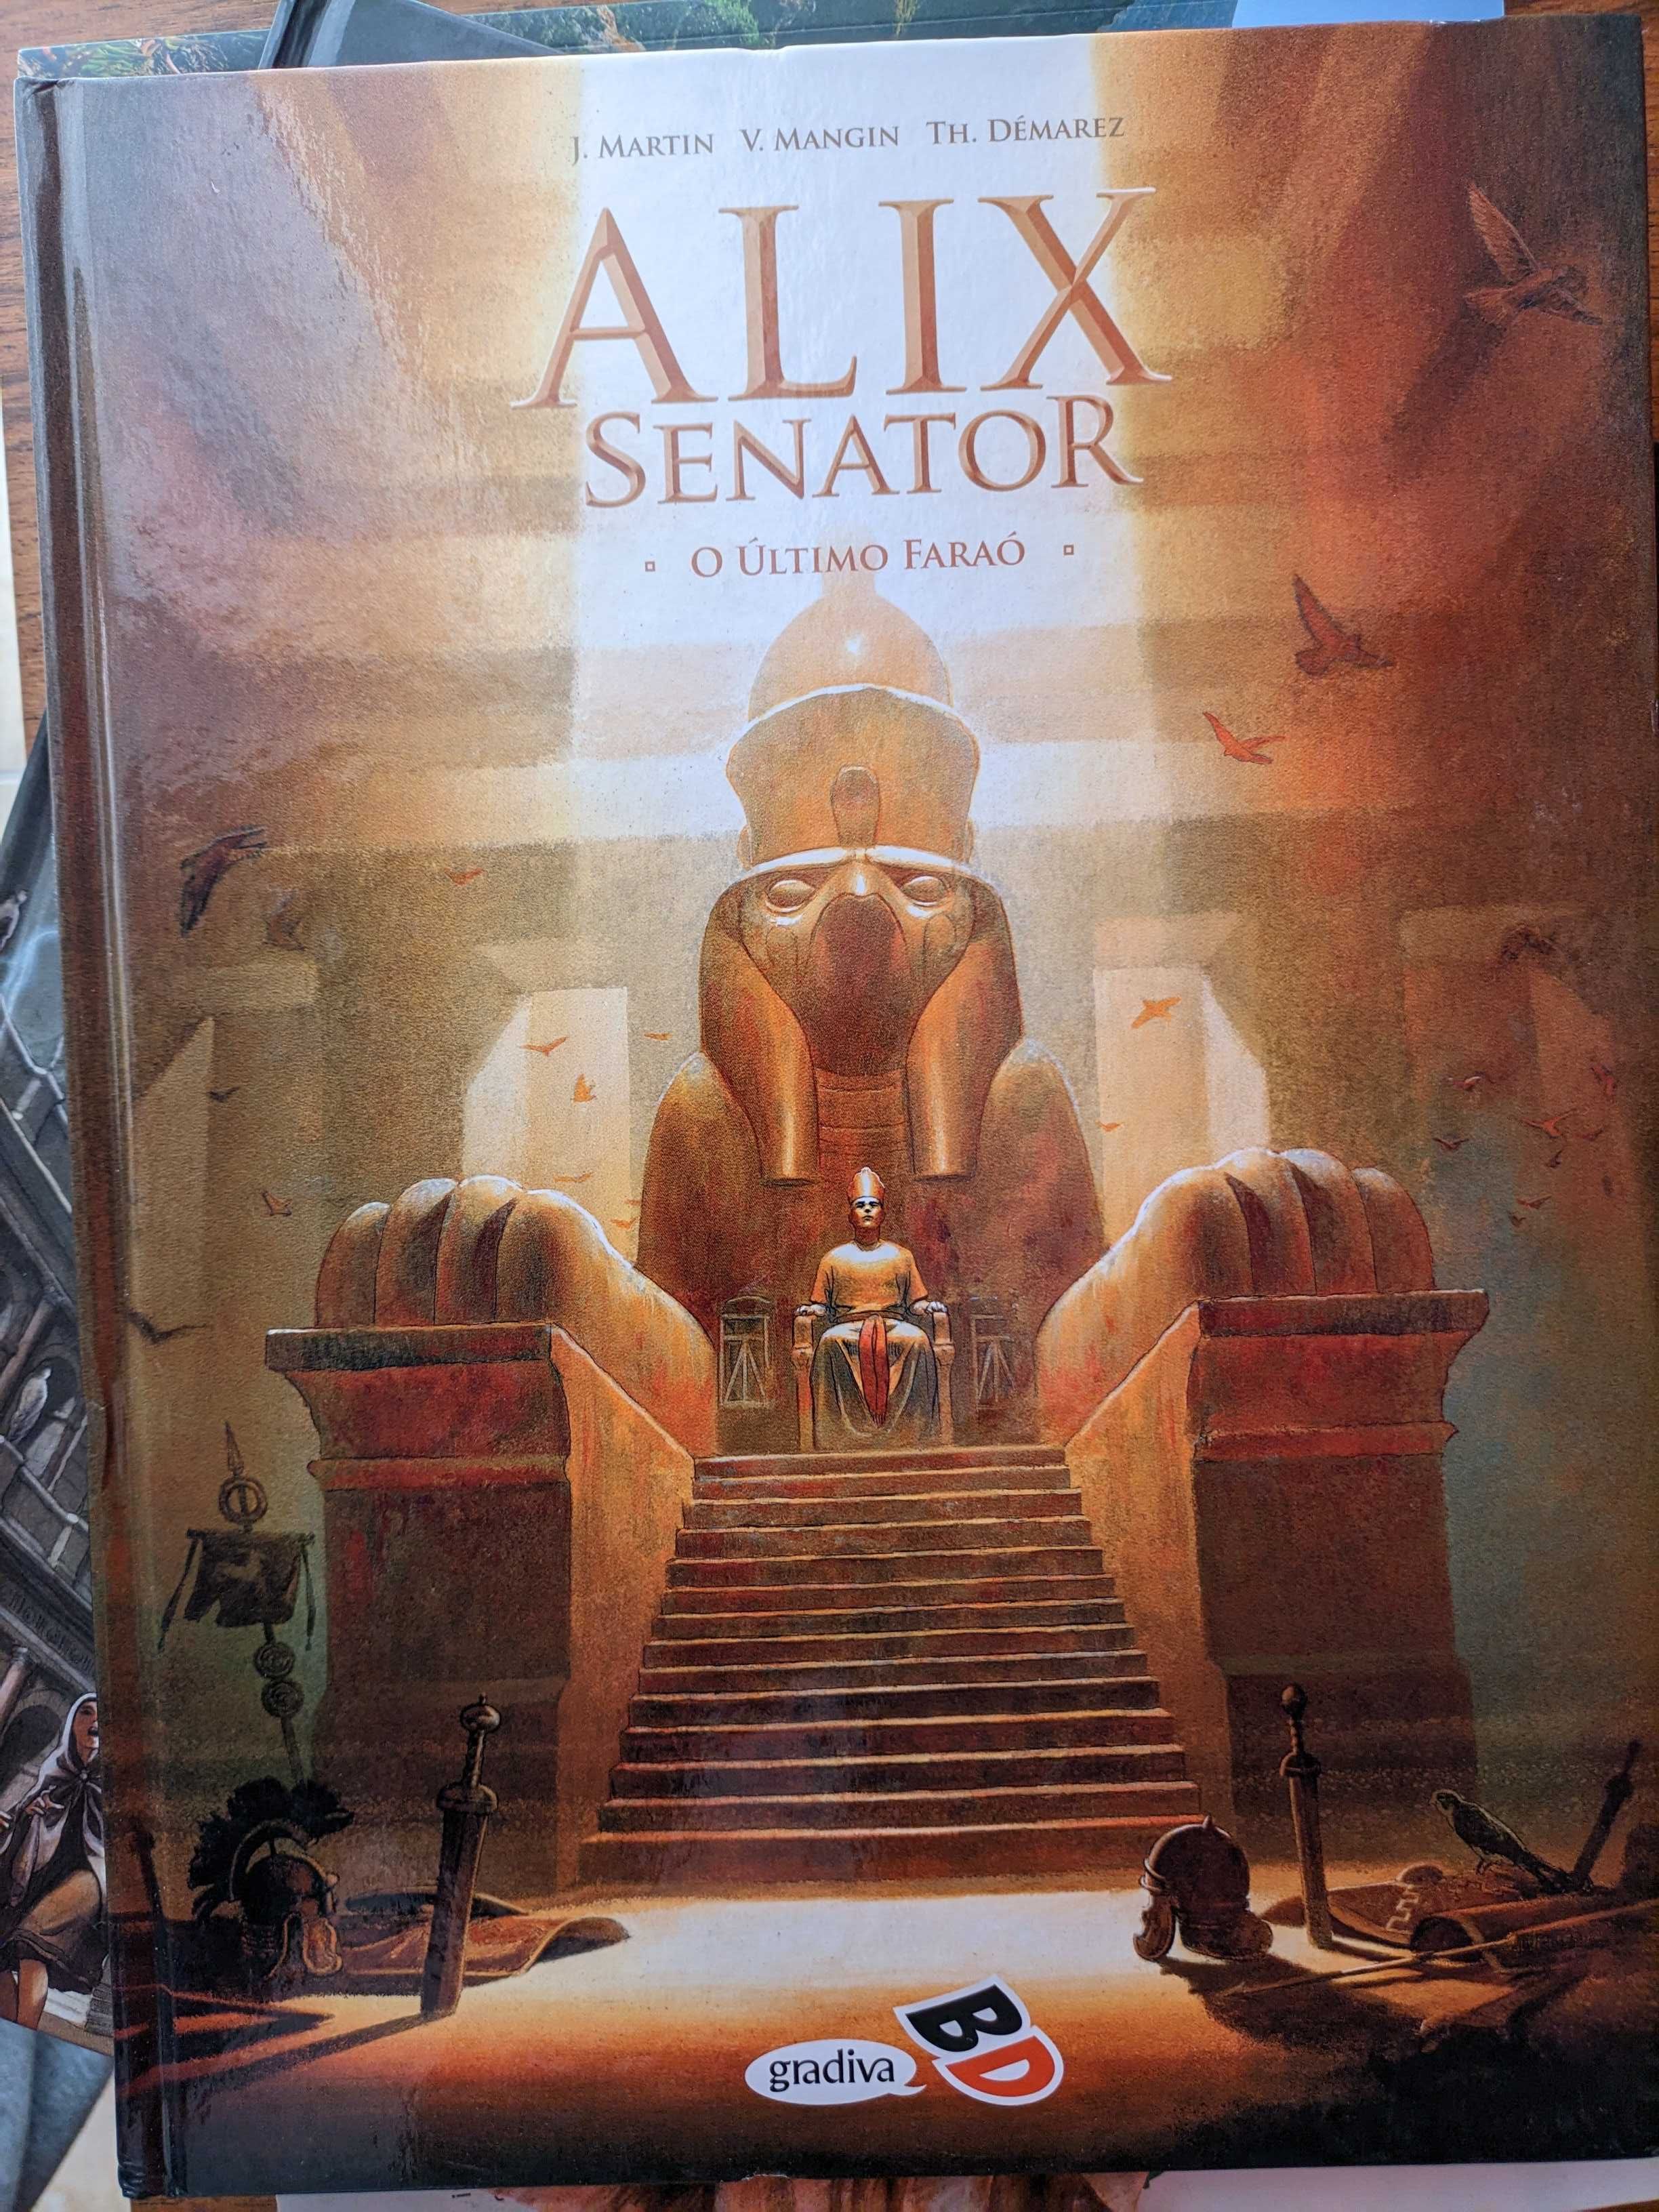 Livros BD: Alix Senator 1-As Águias de Sangue e 2-O Último Faraó